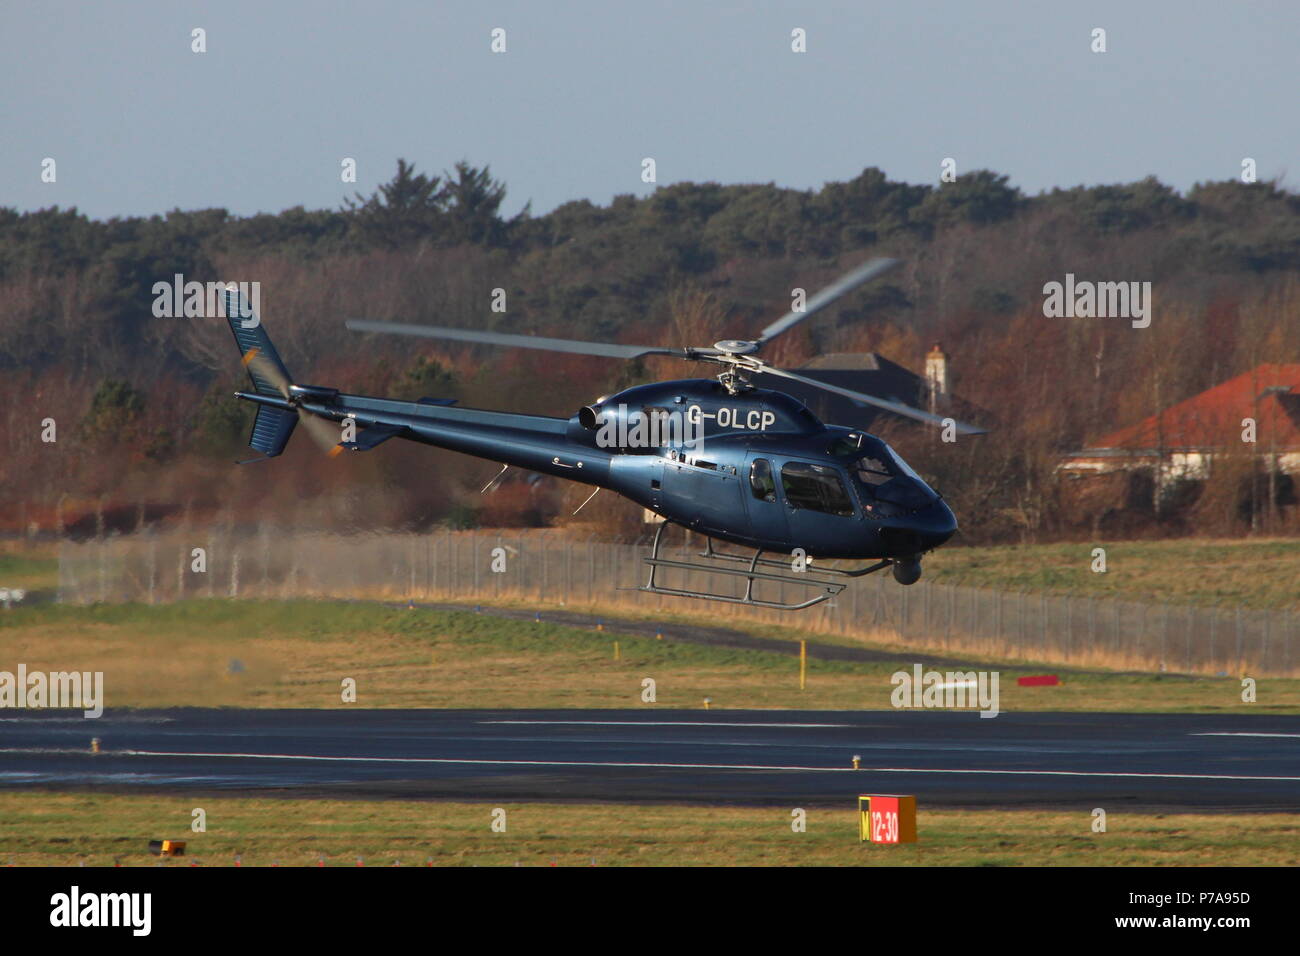 G-OLCP, eine Aerospatiale (Eurocopter) als 355 NP TWIN SQUIRREL (Ecureuil 2) durch GB-Hubschrauber betrieben, am Internationalen Flughafen Prestwick, Ayrshire. Stockfoto